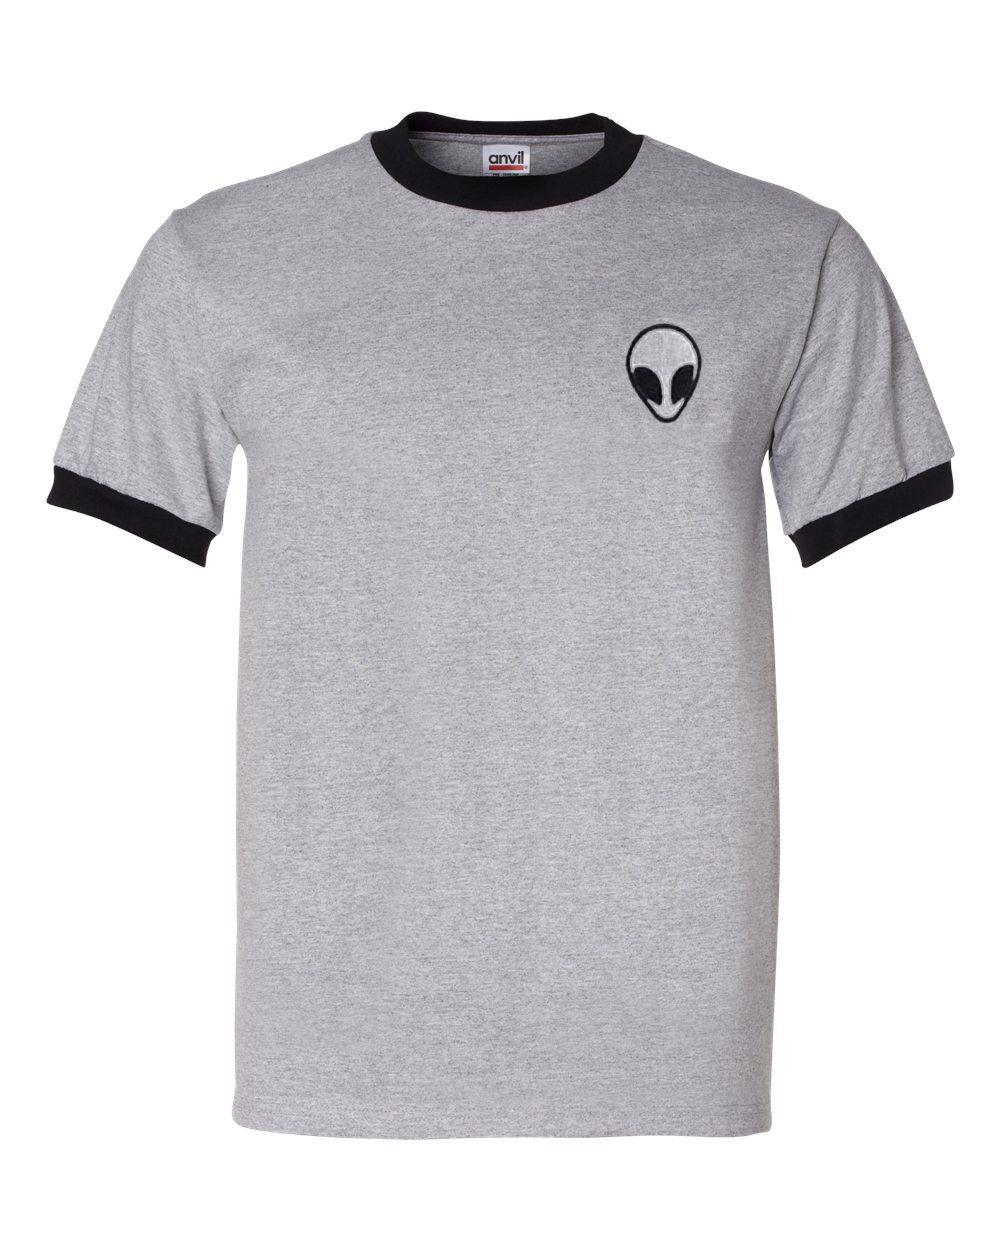 Grey Alien Logo - Alien logo Grey ringer T-shirt